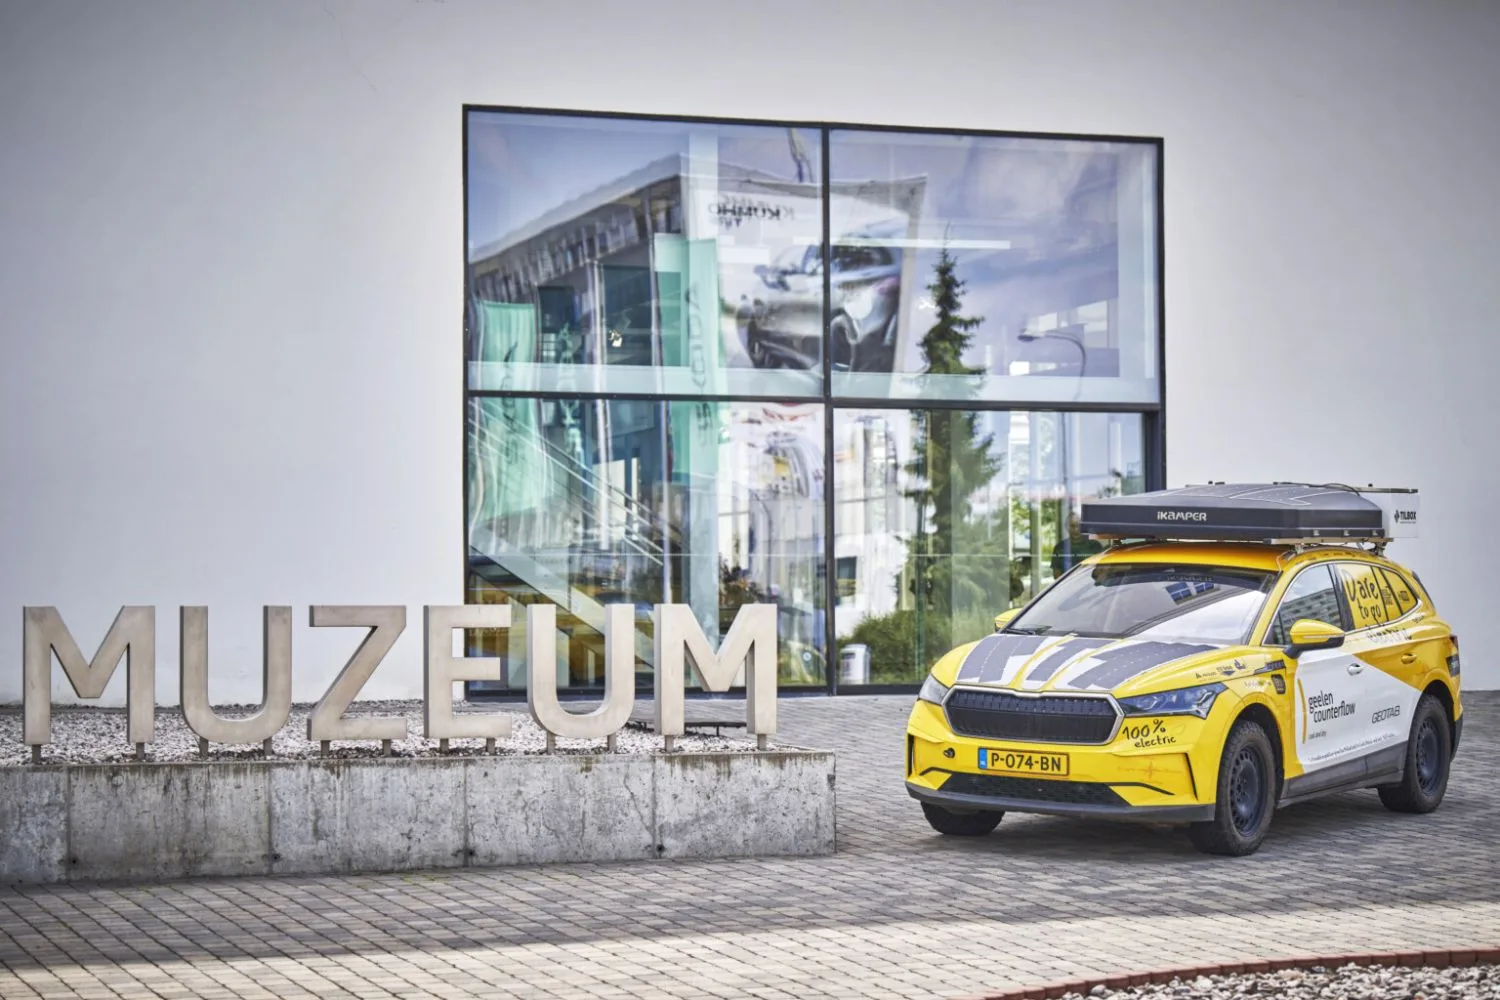 Po více než 33 000 kilometrech napříč Afrikou míří Škoda Enyaq do sbírky Škoda Muzea